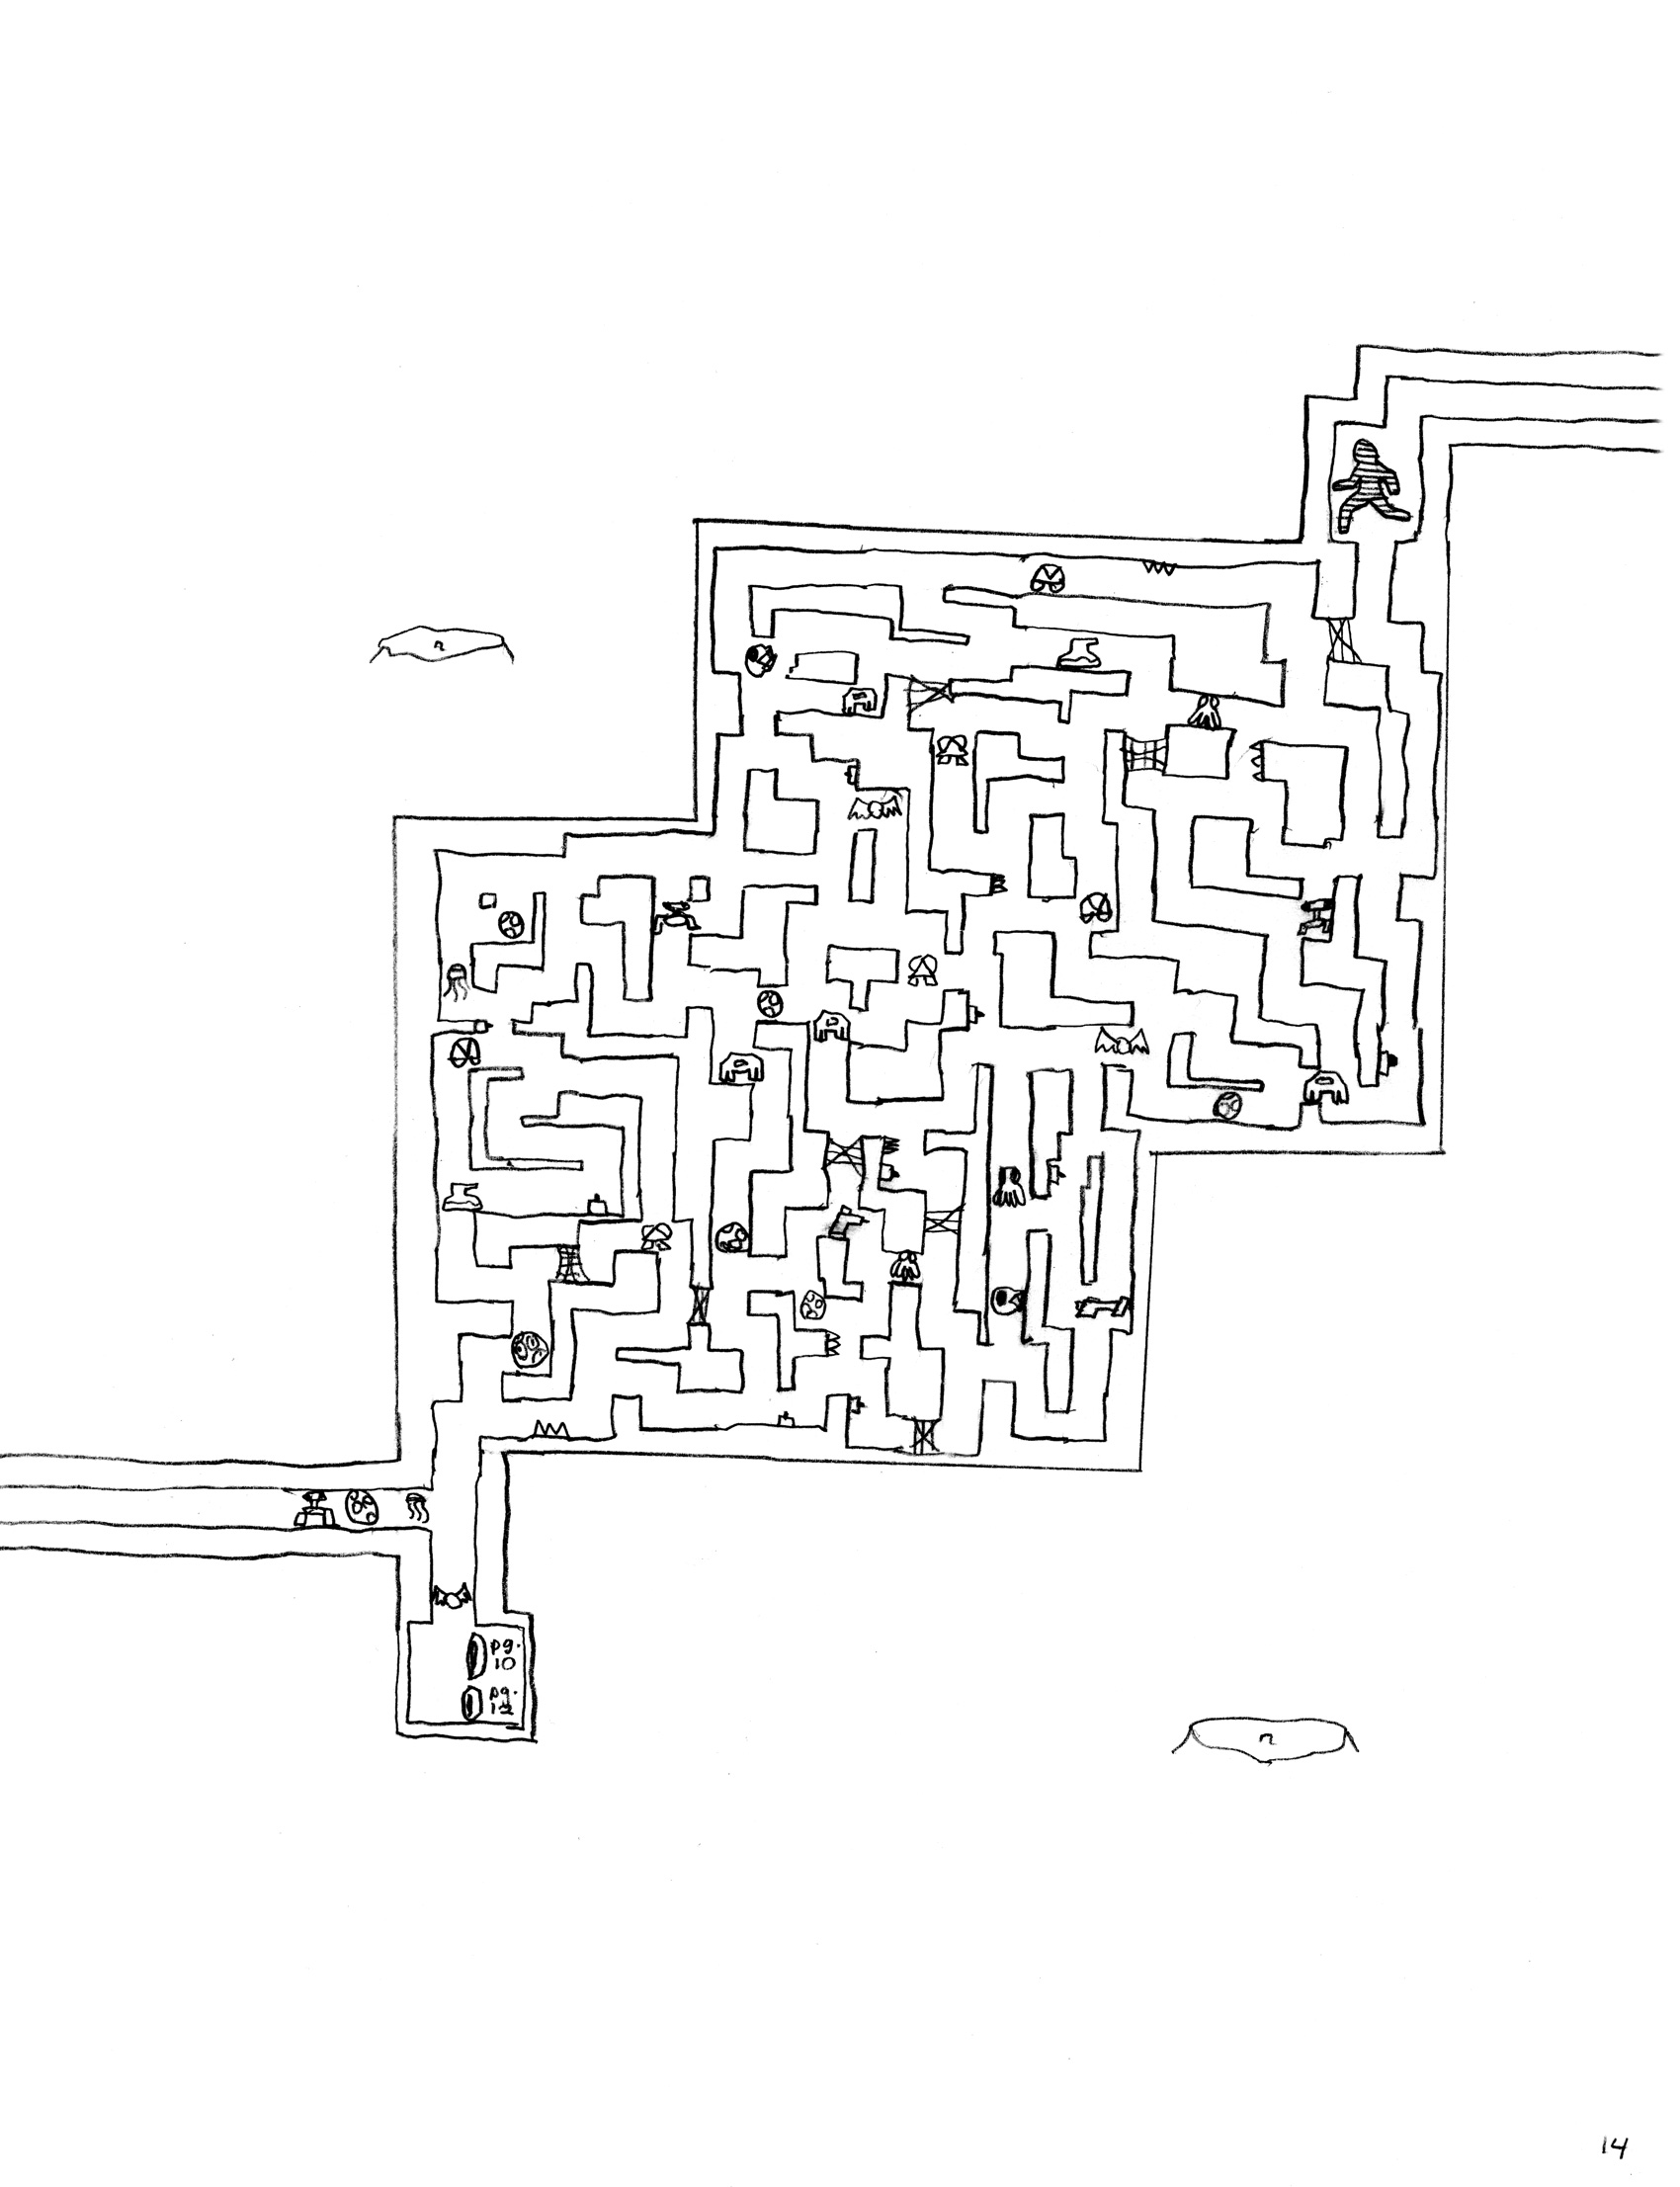 Moon Colony Maze